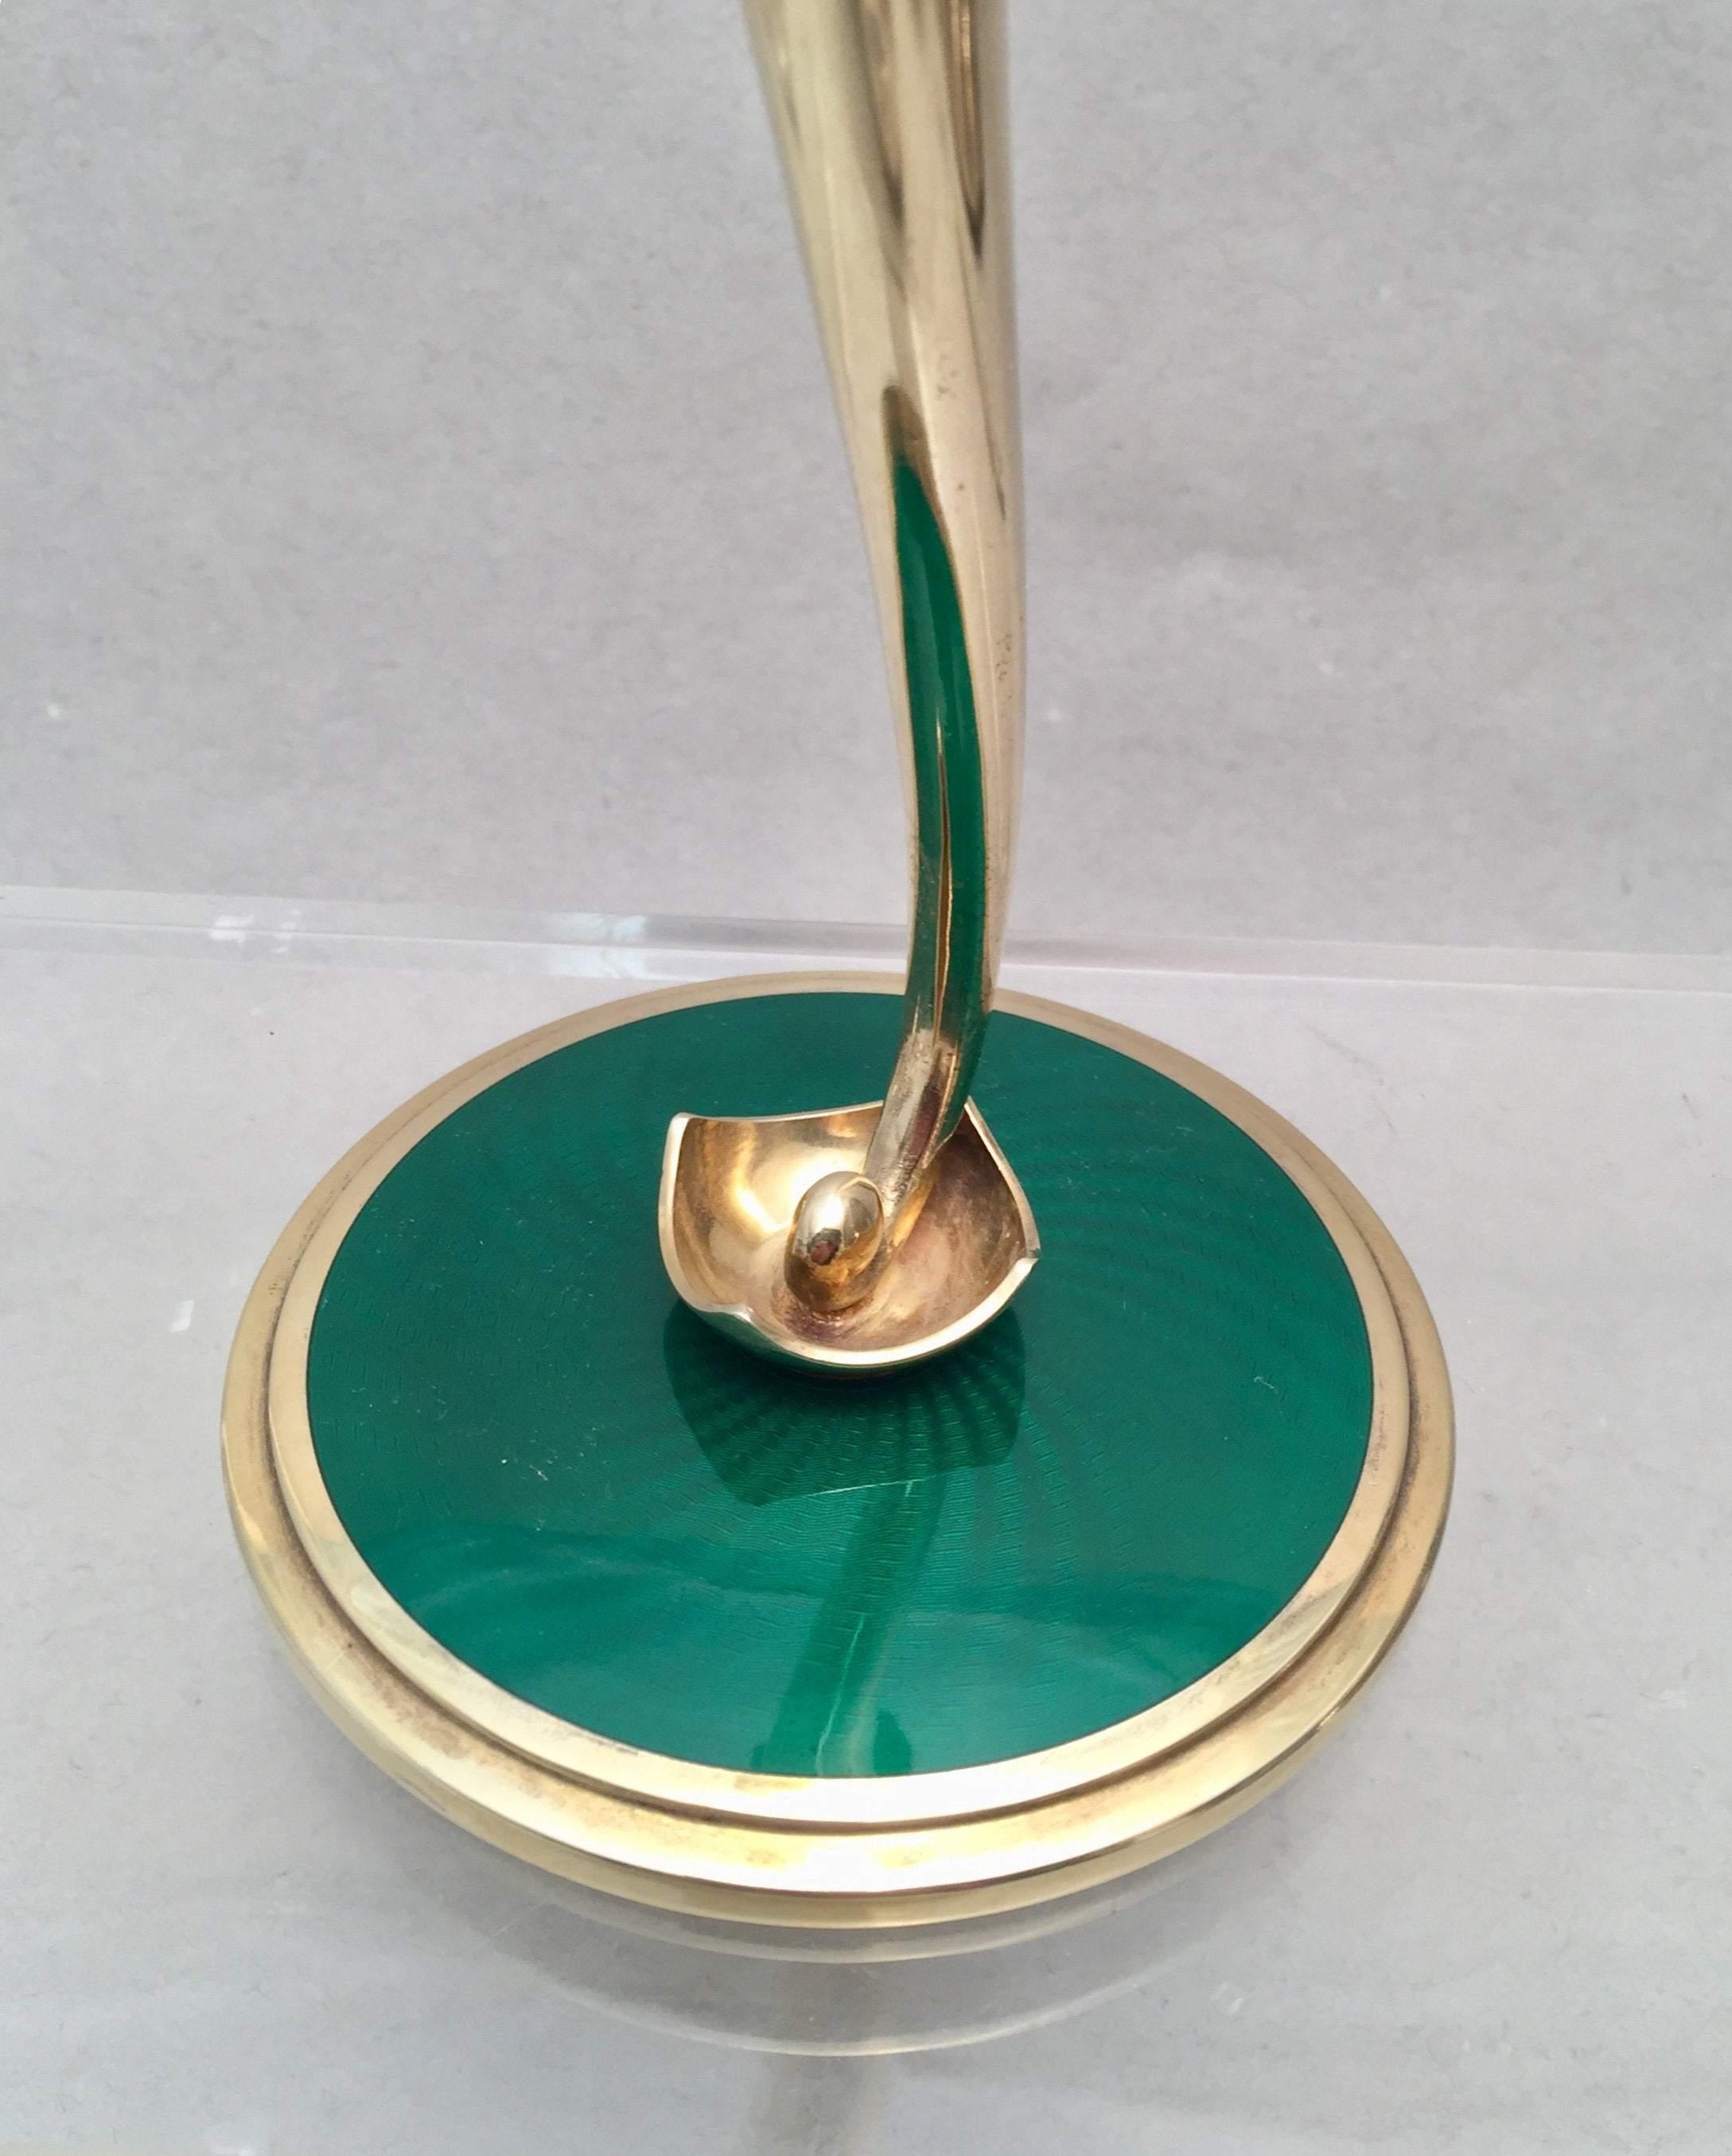 Vase en argent sterling doré par le fabricant norvégien J. Tostrup. Conçu en forme de trompette avec un bec et une tige en forme de fleur. La base en émail vert est en forme d'escalier. Mesurant 8 pouces de haut et 3 3/4 pouces de diamètre à la